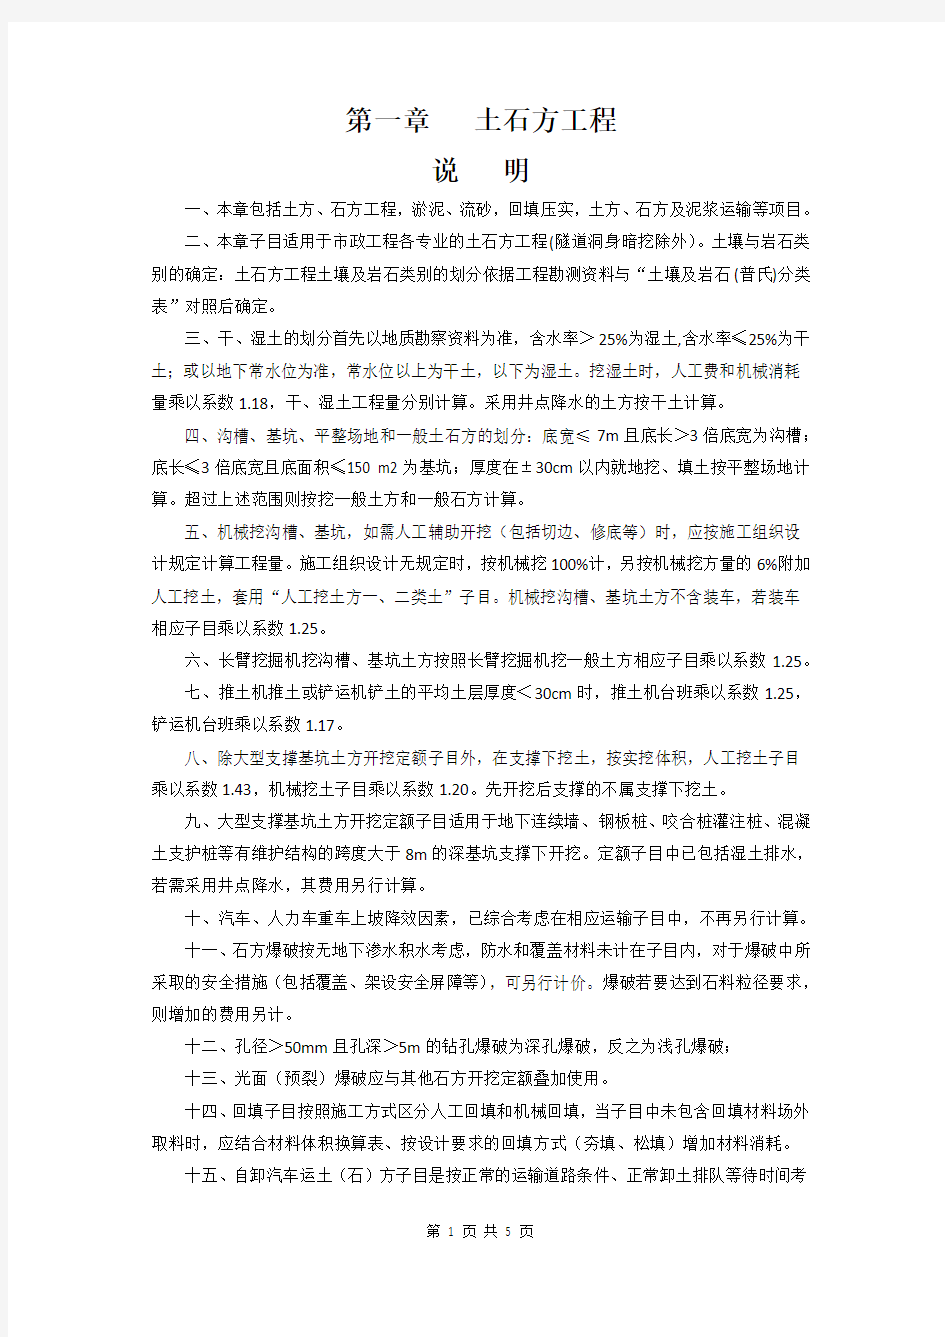 【深圳市市政工程消耗量定额(2017)】第一册 第一章 土石方工程